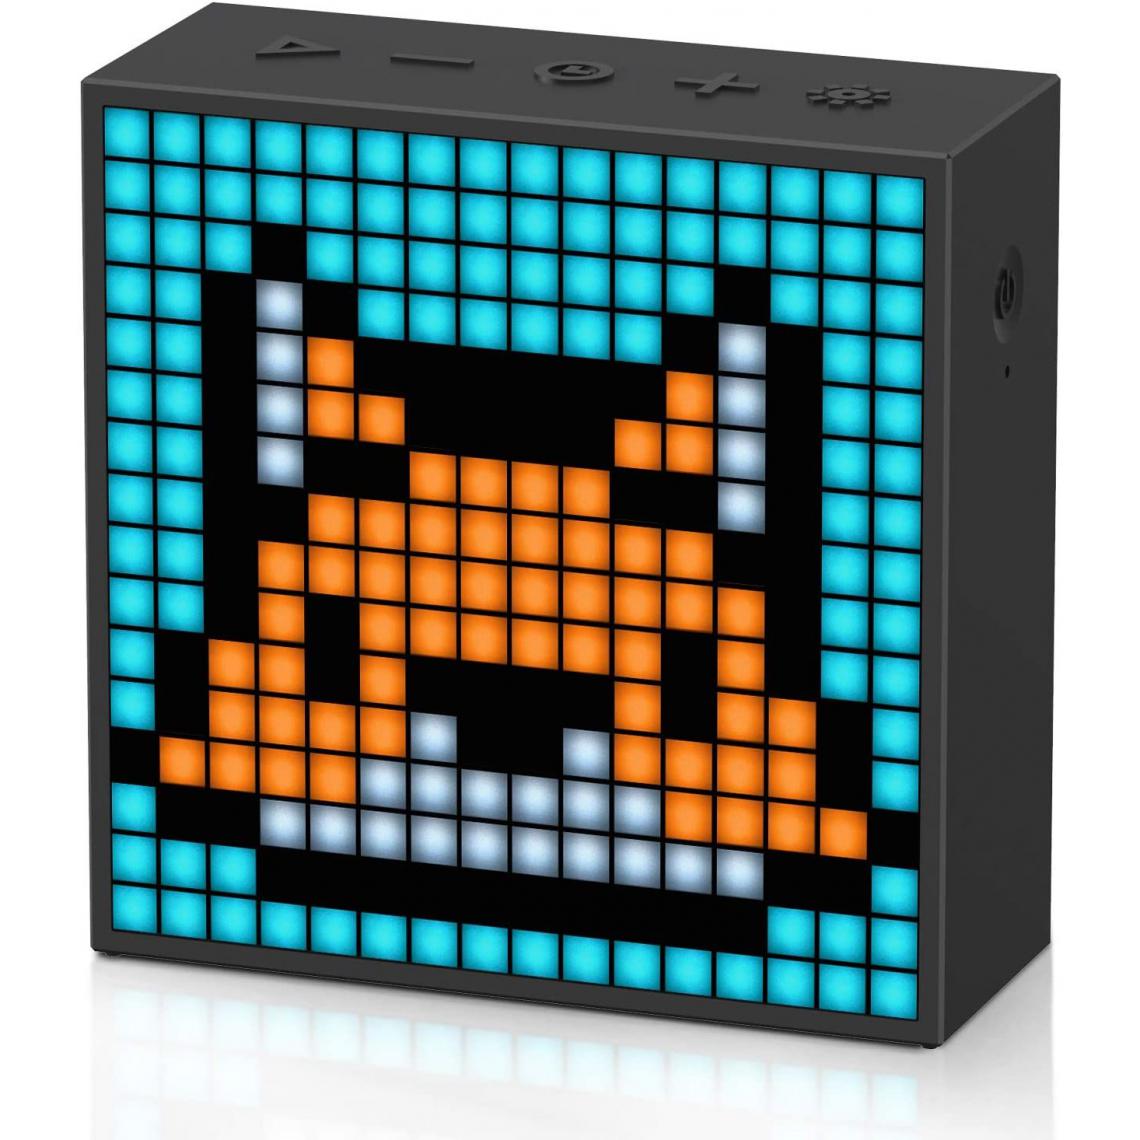 Chrono - Divoom Timebox-Evo, Animation Pixel Art Enceinte Bluetooth, 12 Sonneries, Affichage De La Température,Noir - Enceintes Hifi